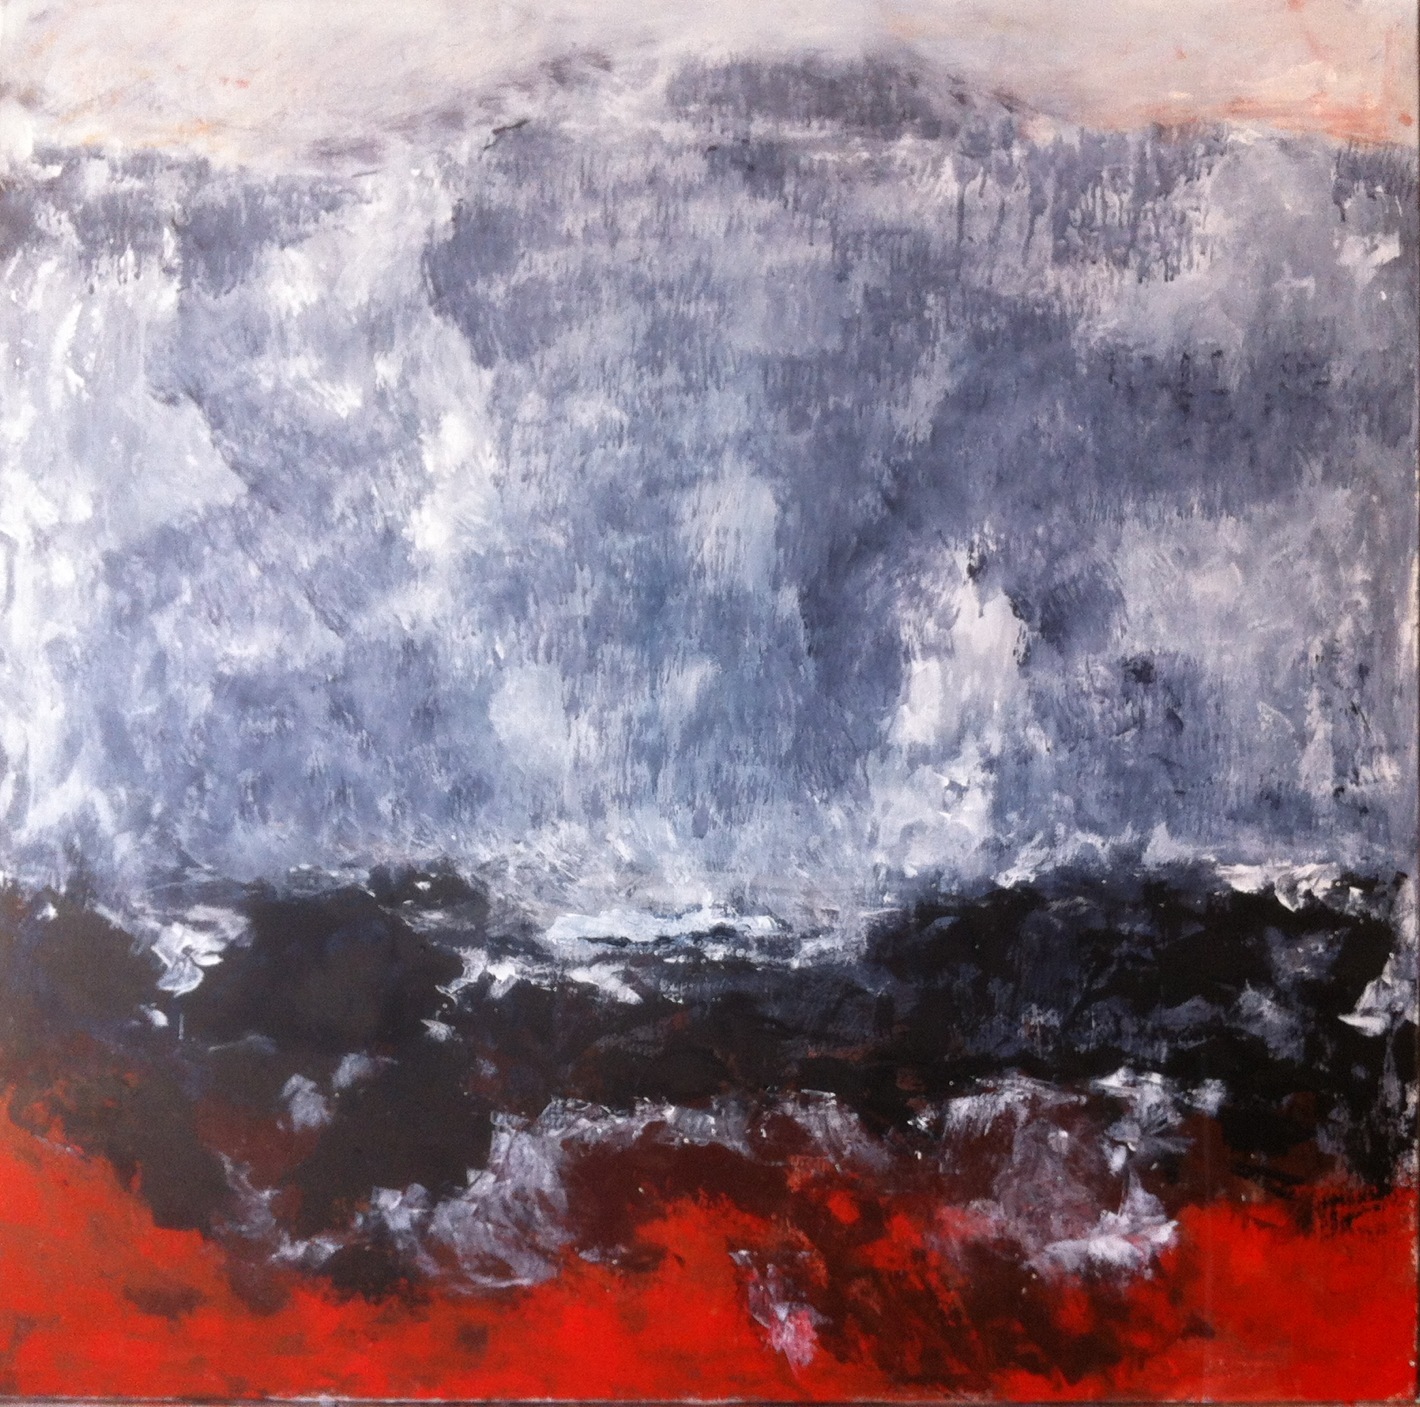 N°1258 - Par delà la montagne - Acrylique sur toile - 100 x 100 cm - 12 mars 2014